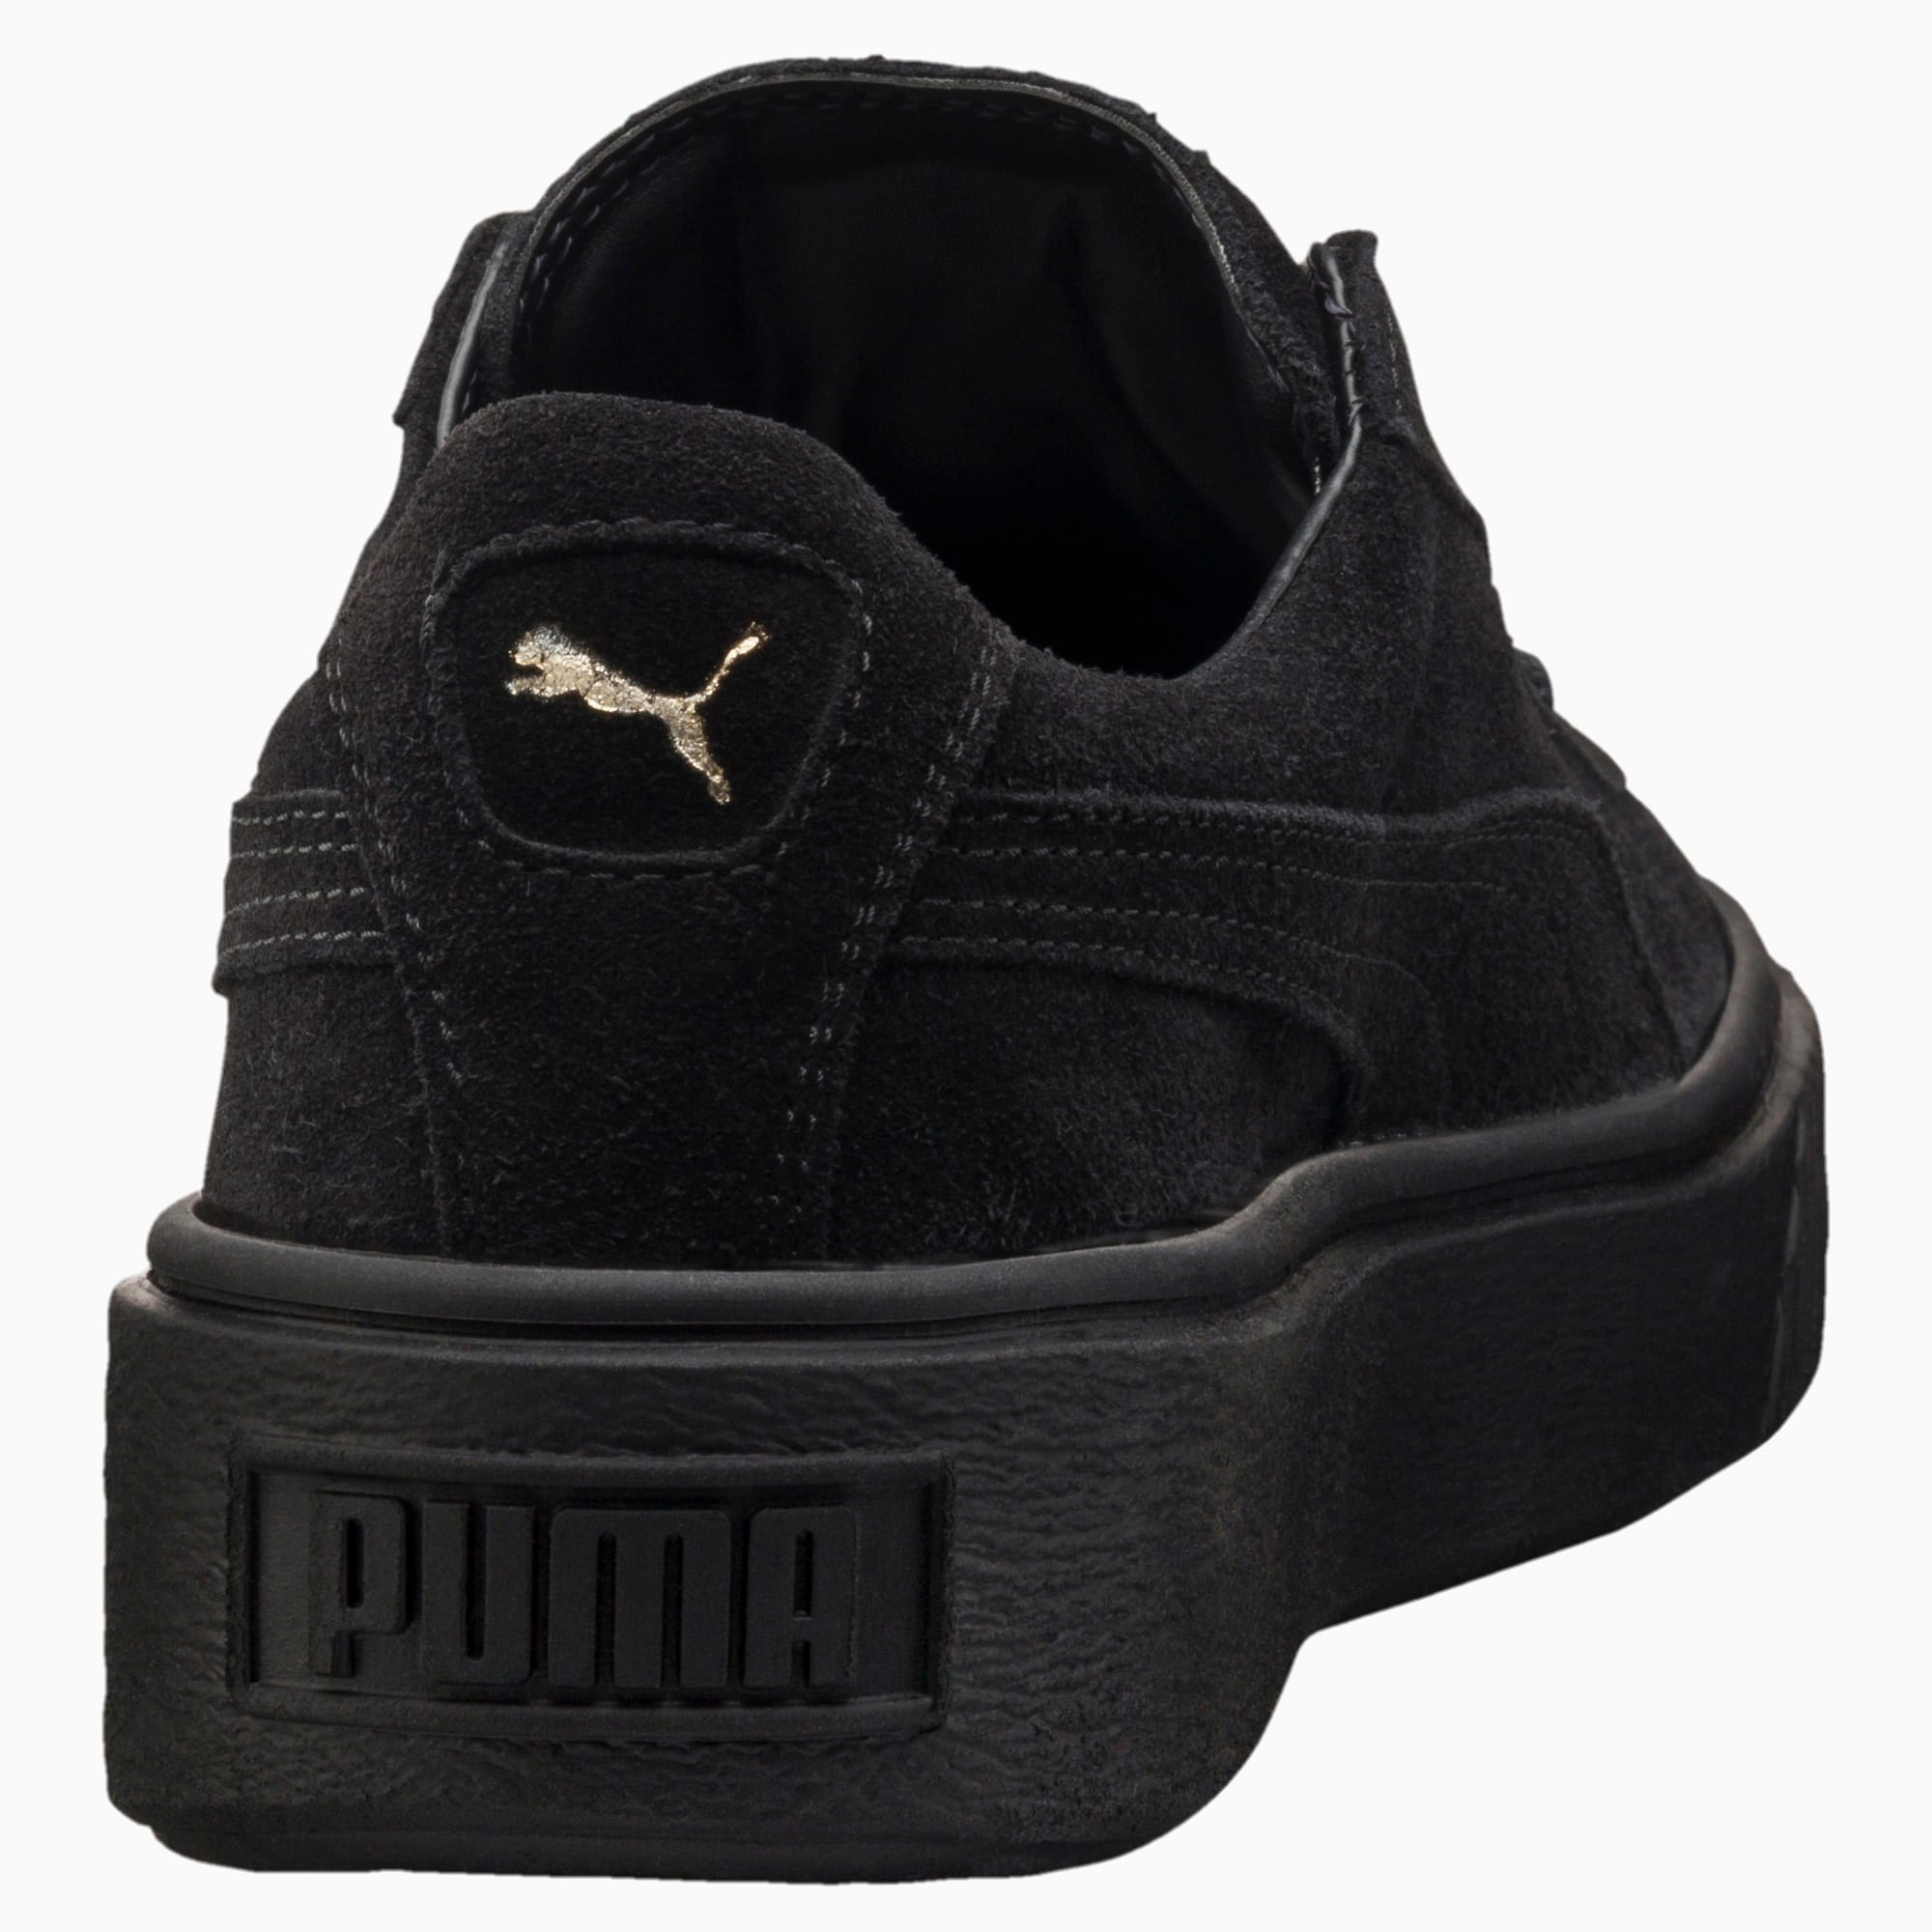 puma suede platform black